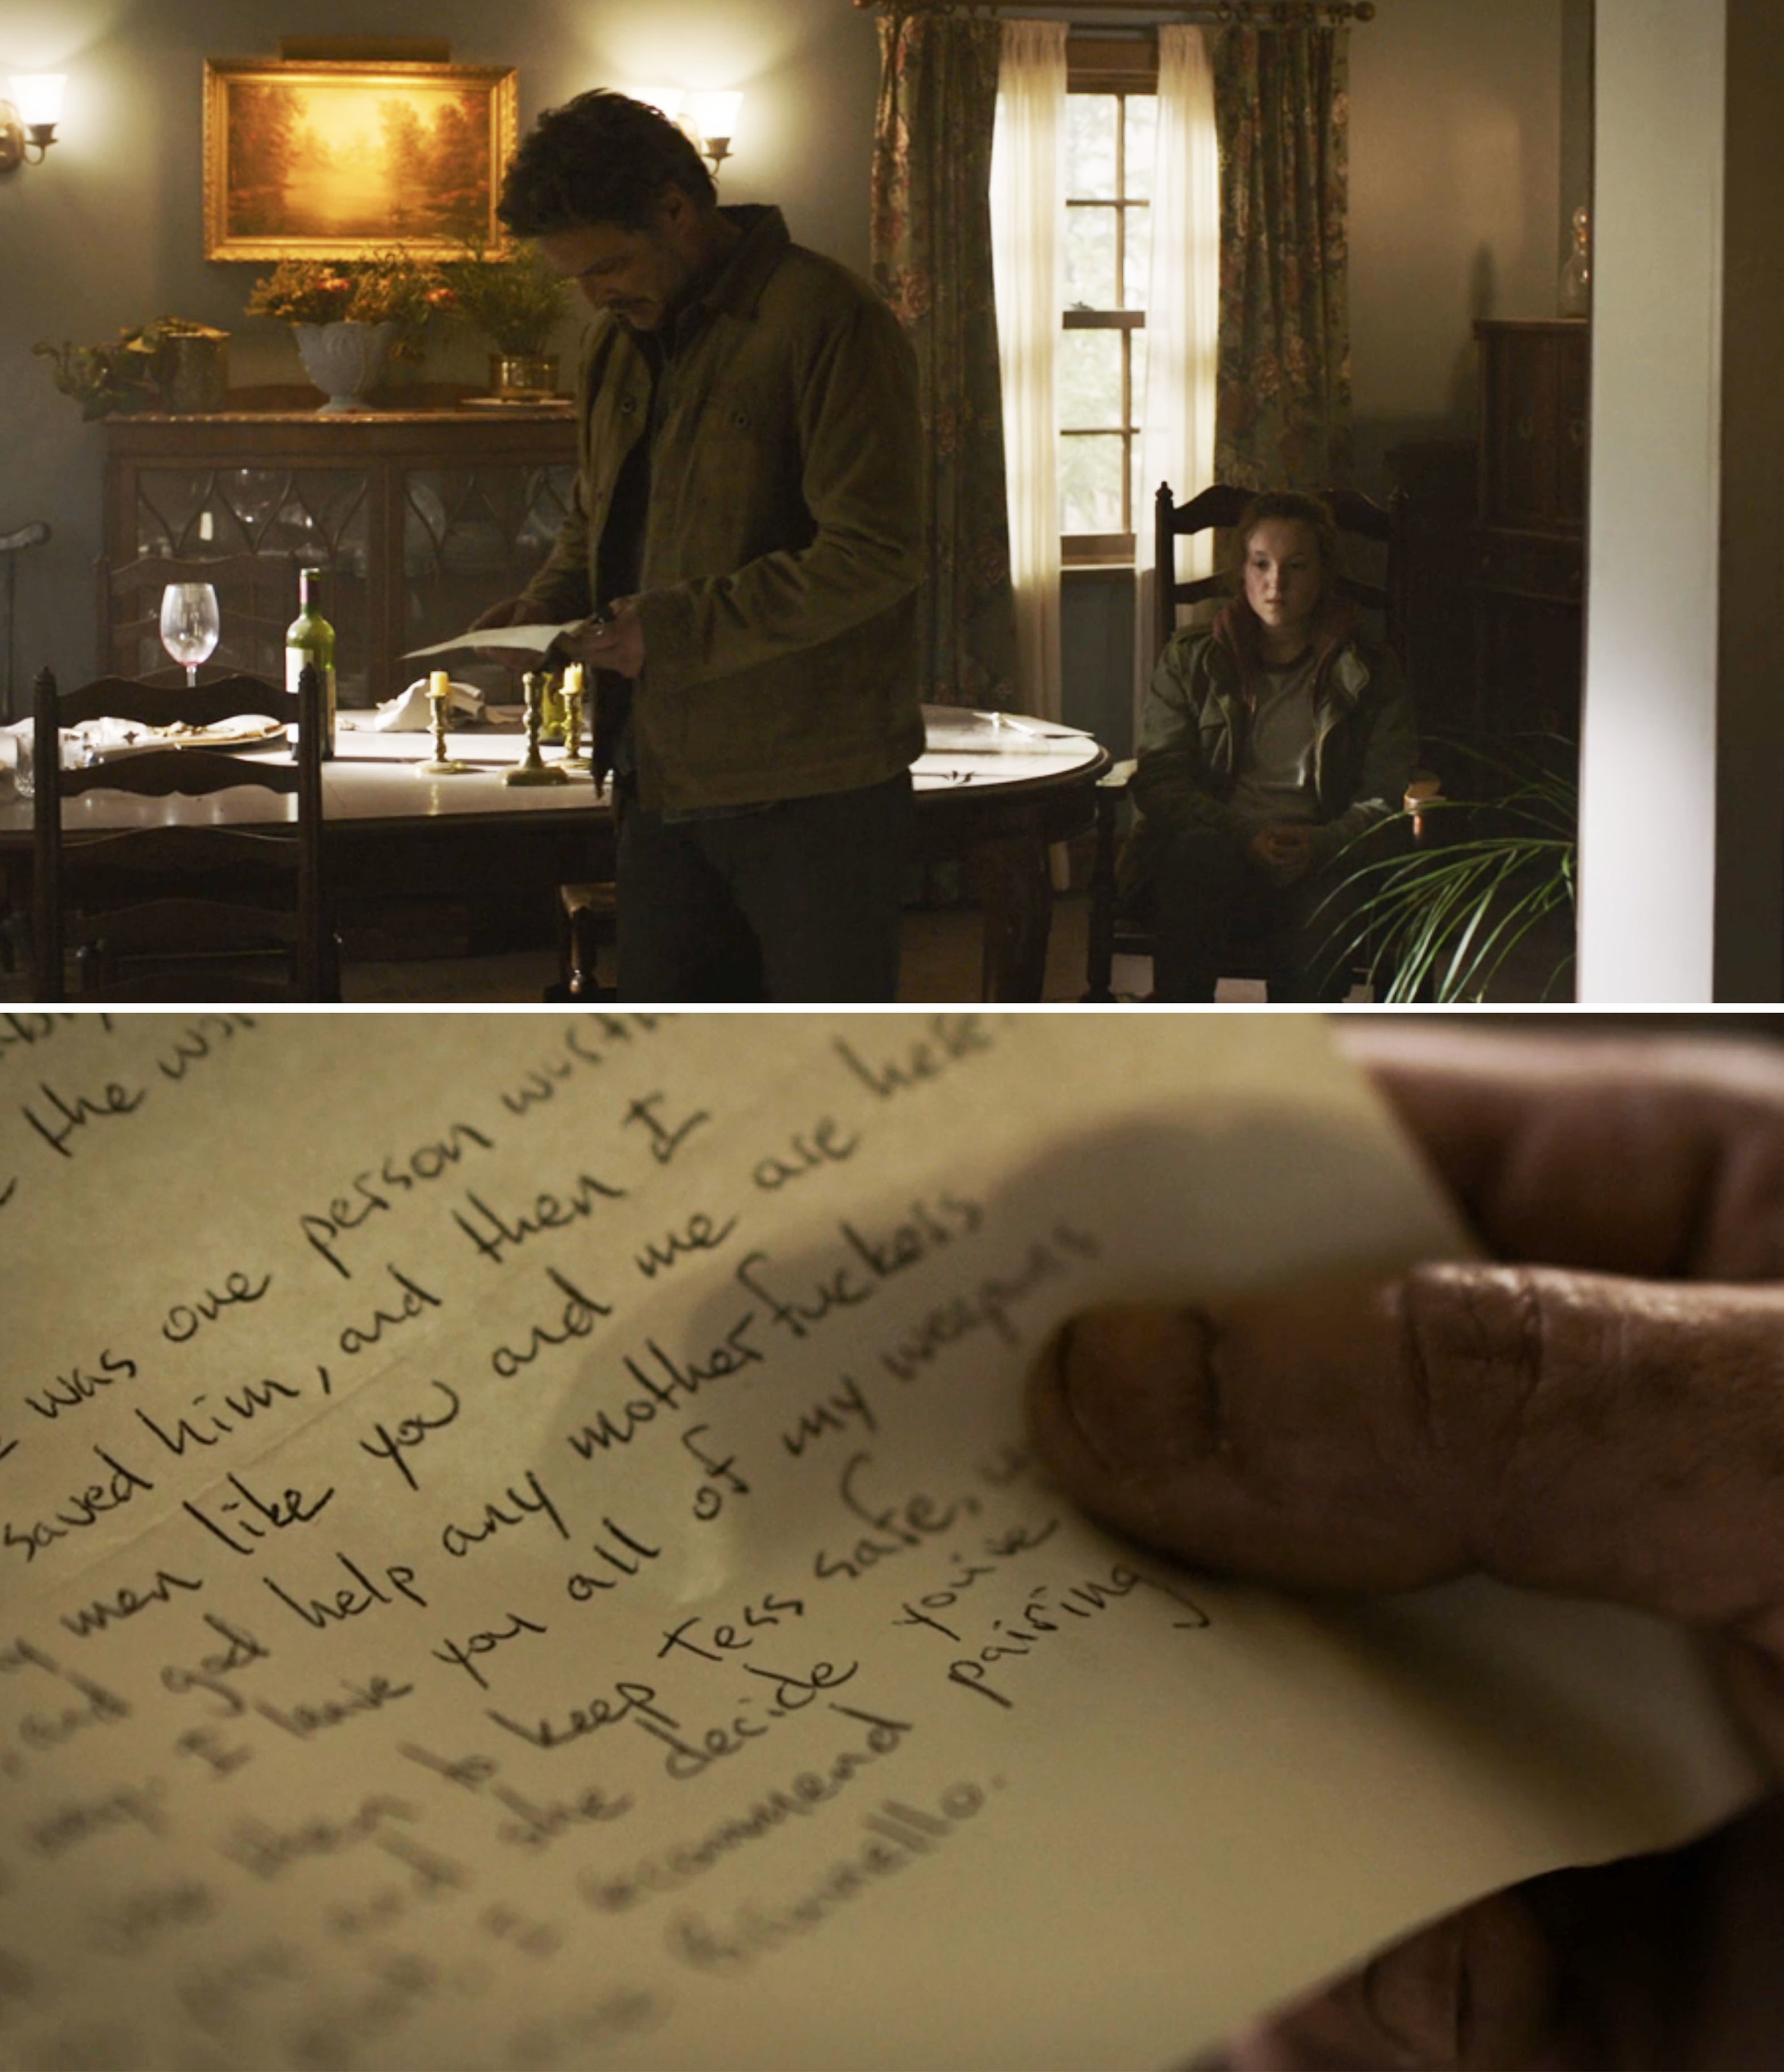 The Last Of Us Bill's Letter Easter Egg